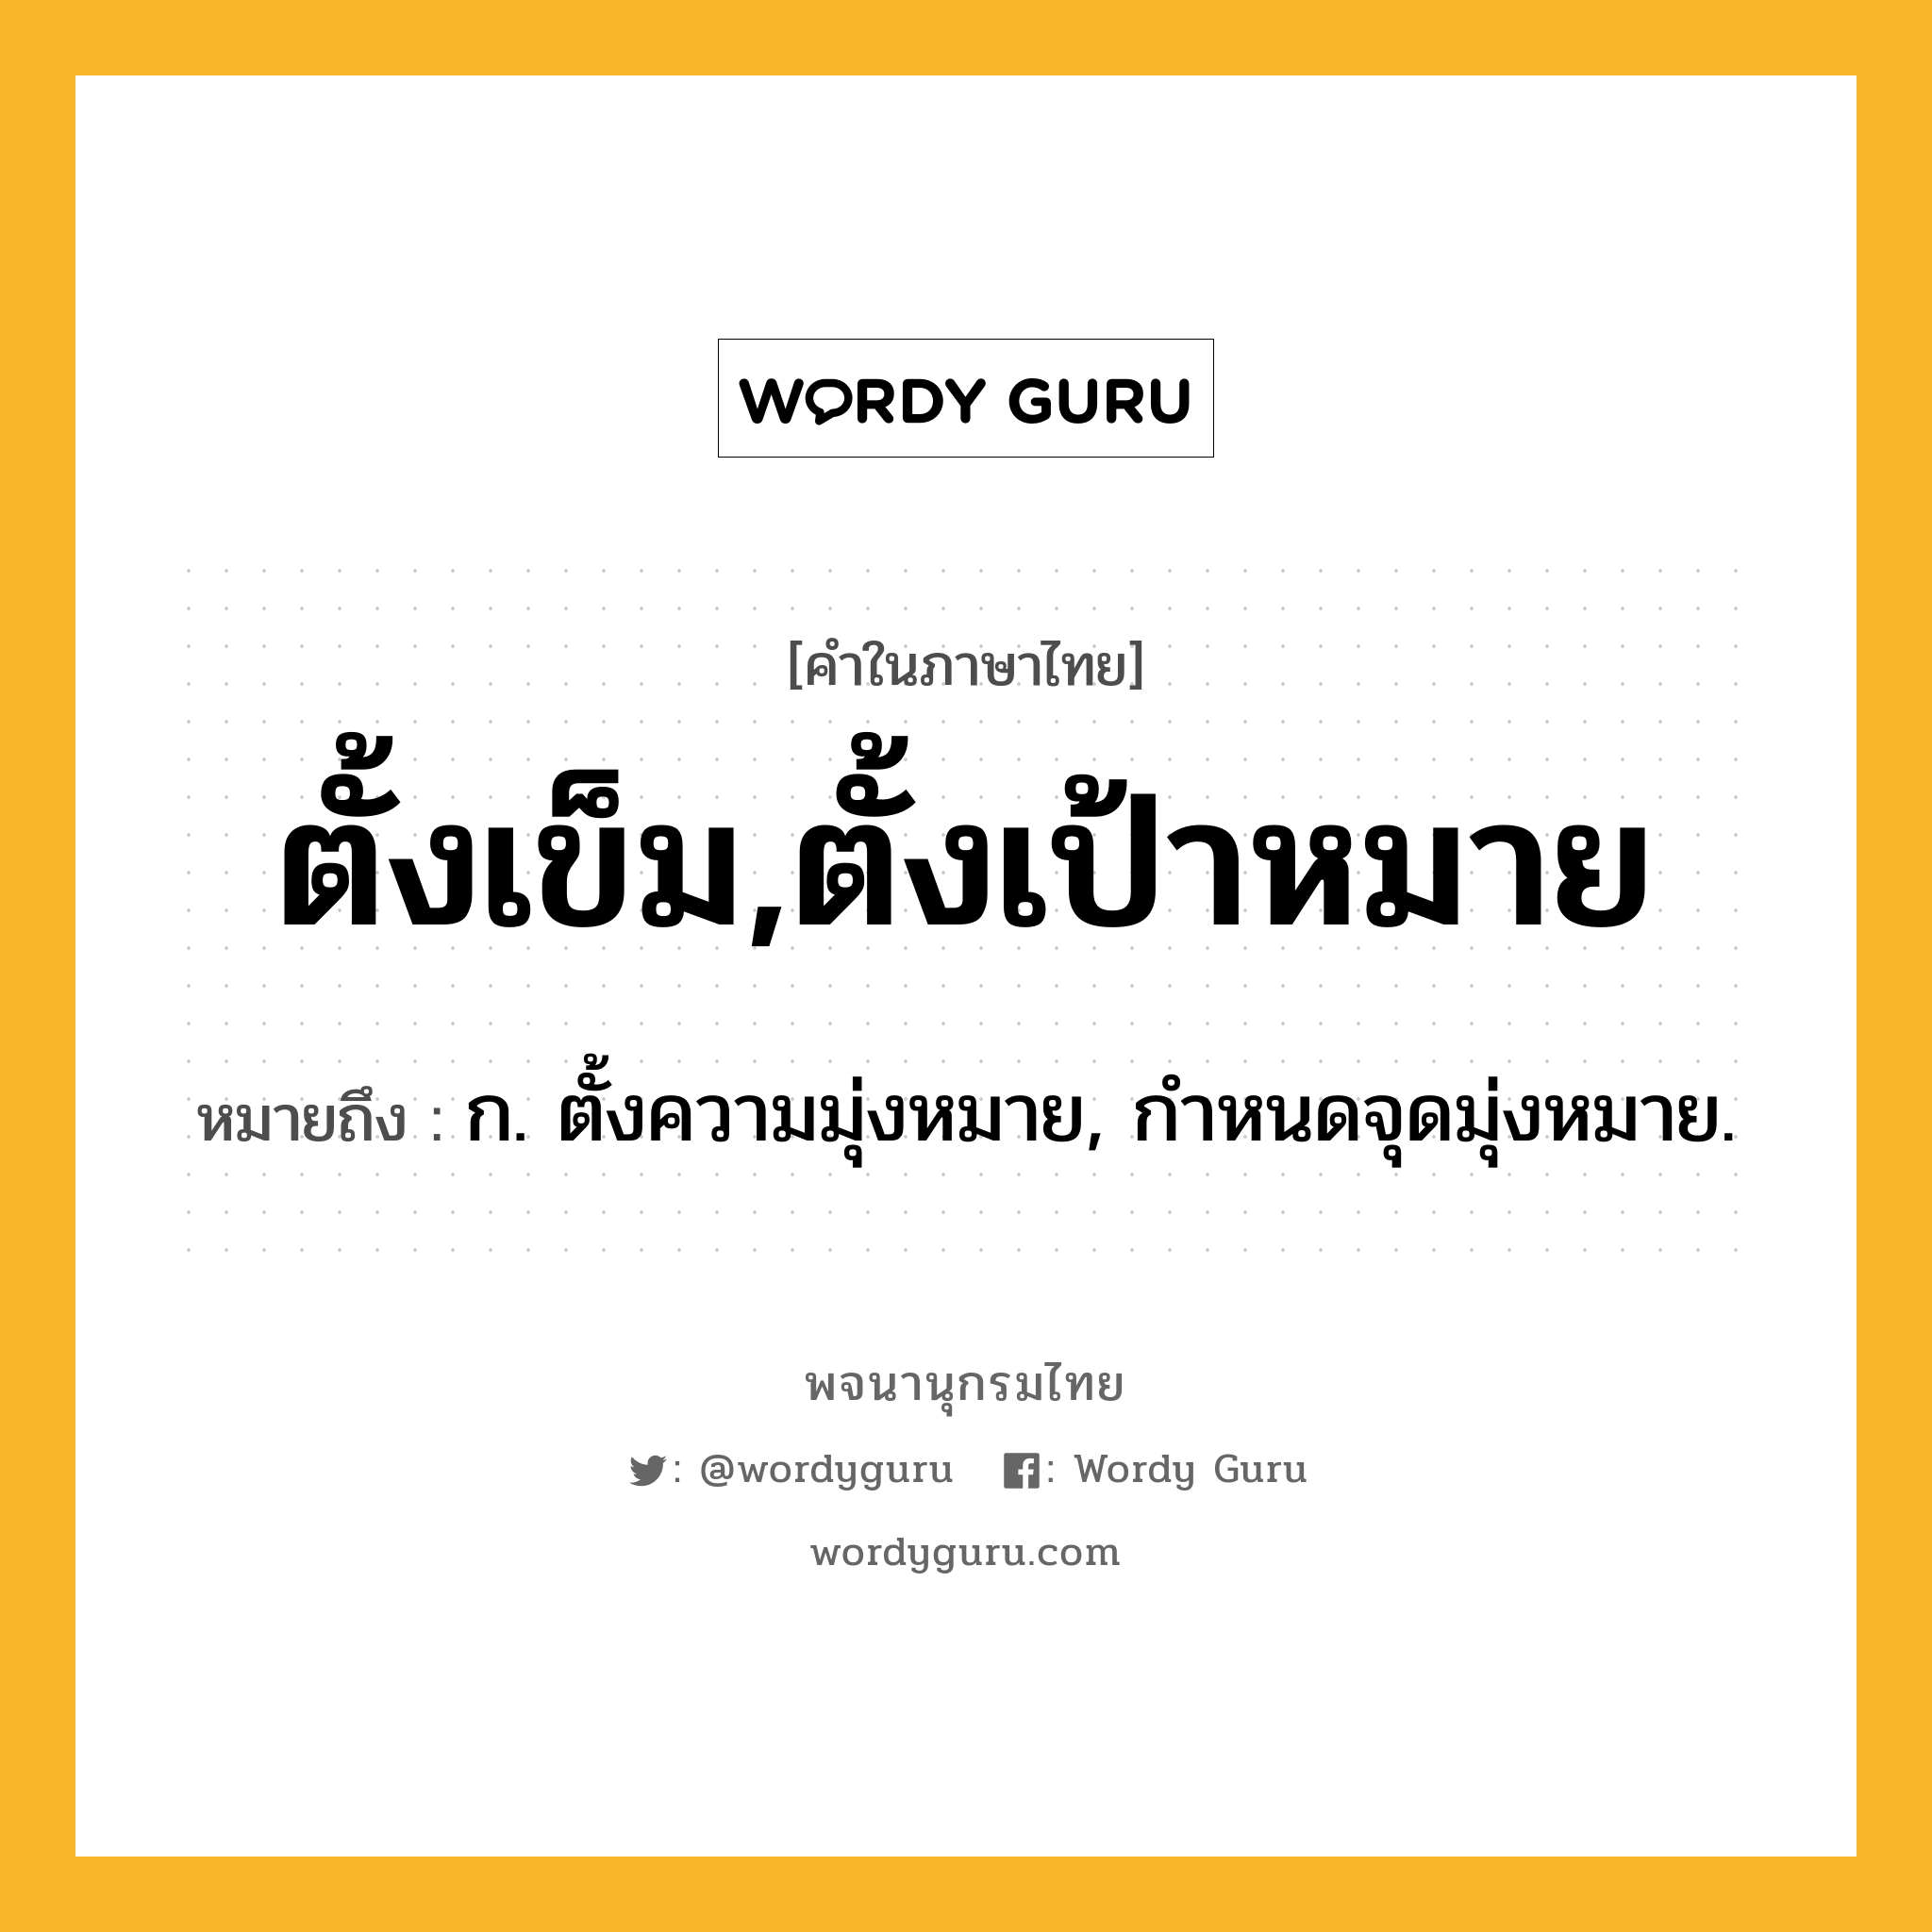 ตั้งเข็ม,ตั้งเป้าหมาย ความหมาย หมายถึงอะไร?, คำในภาษาไทย ตั้งเข็ม,ตั้งเป้าหมาย หมายถึง ก. ตั้งความมุ่งหมาย, กําหนดจุดมุ่งหมาย.